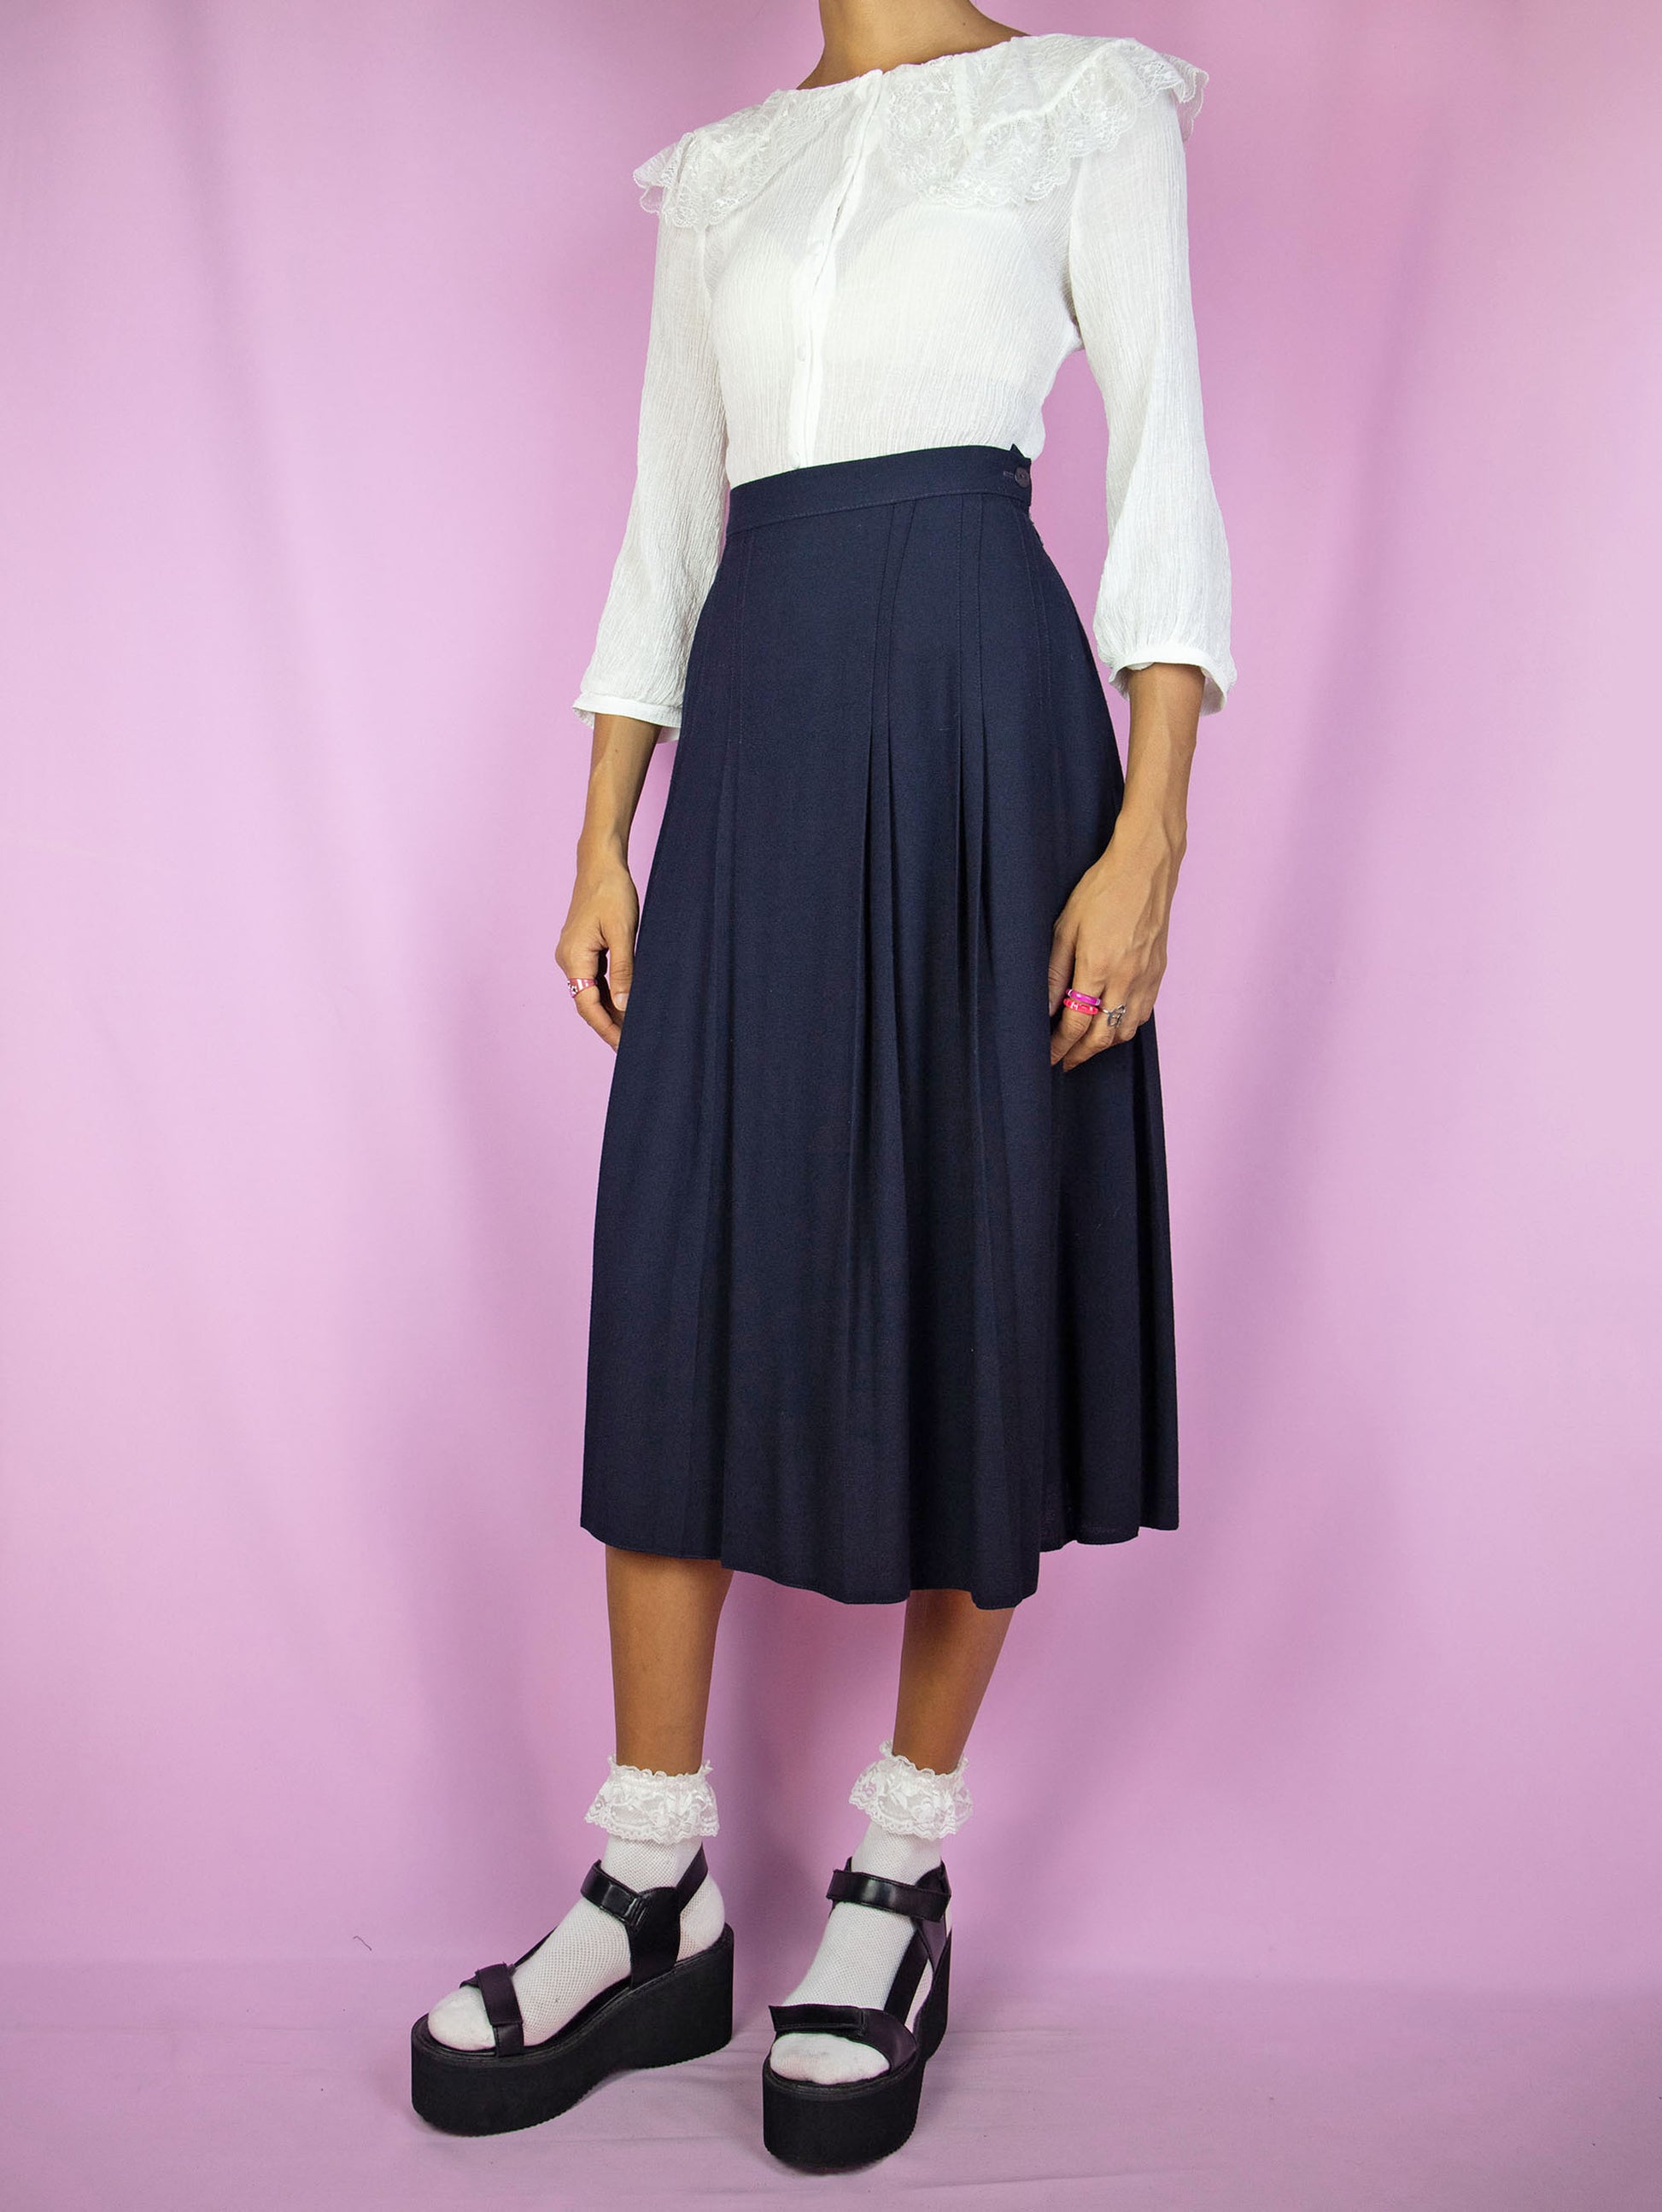 Vintage 90's Navy Pleated Midi Skirt - M/L – Adult World Shop